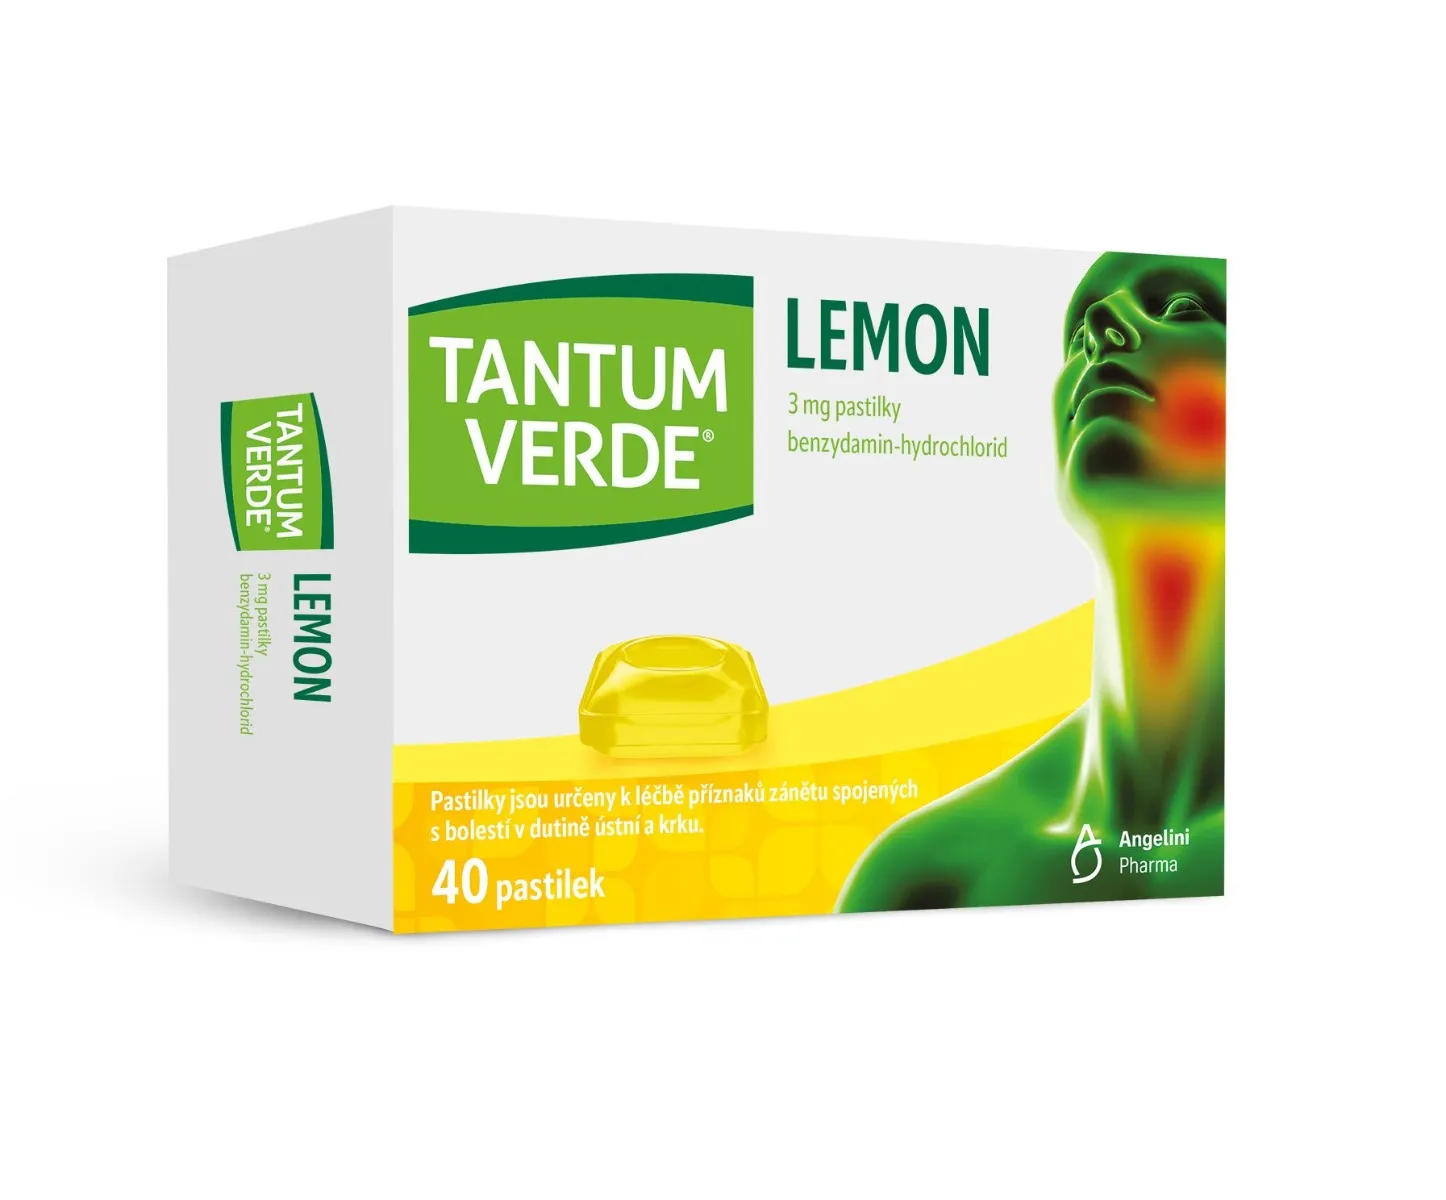 Tantum Verde Lemon 3 mg 40 pastilek